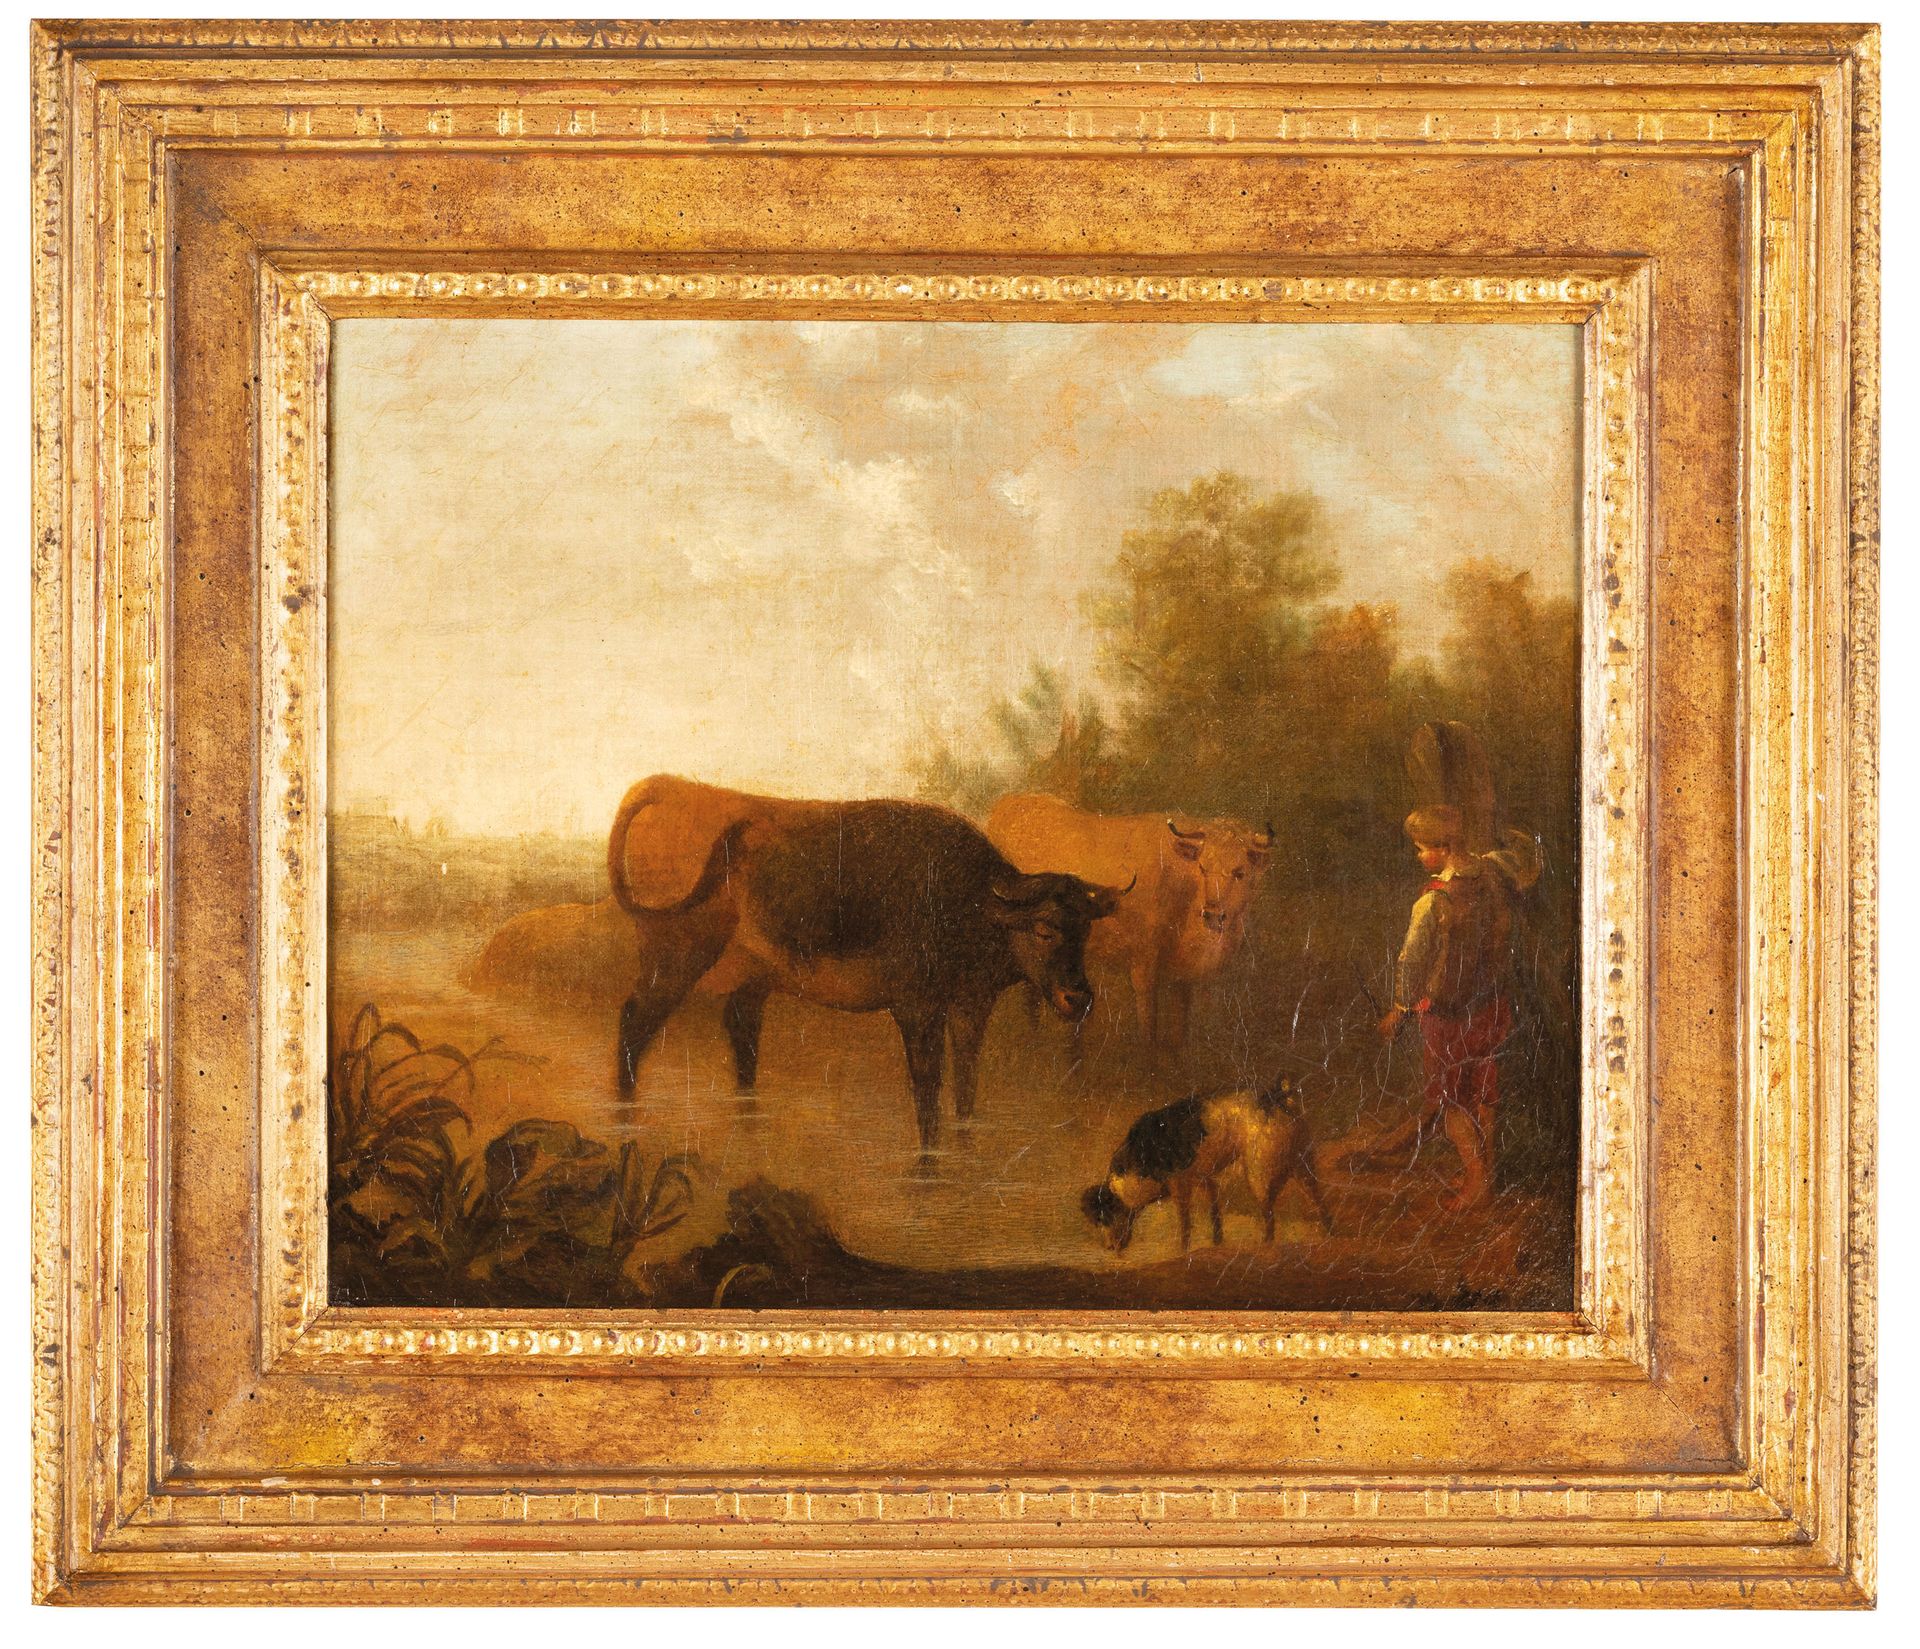 PITTORE DEL XVIII SECOLO Pastoral scene
Oil on canvas, cm 30X38